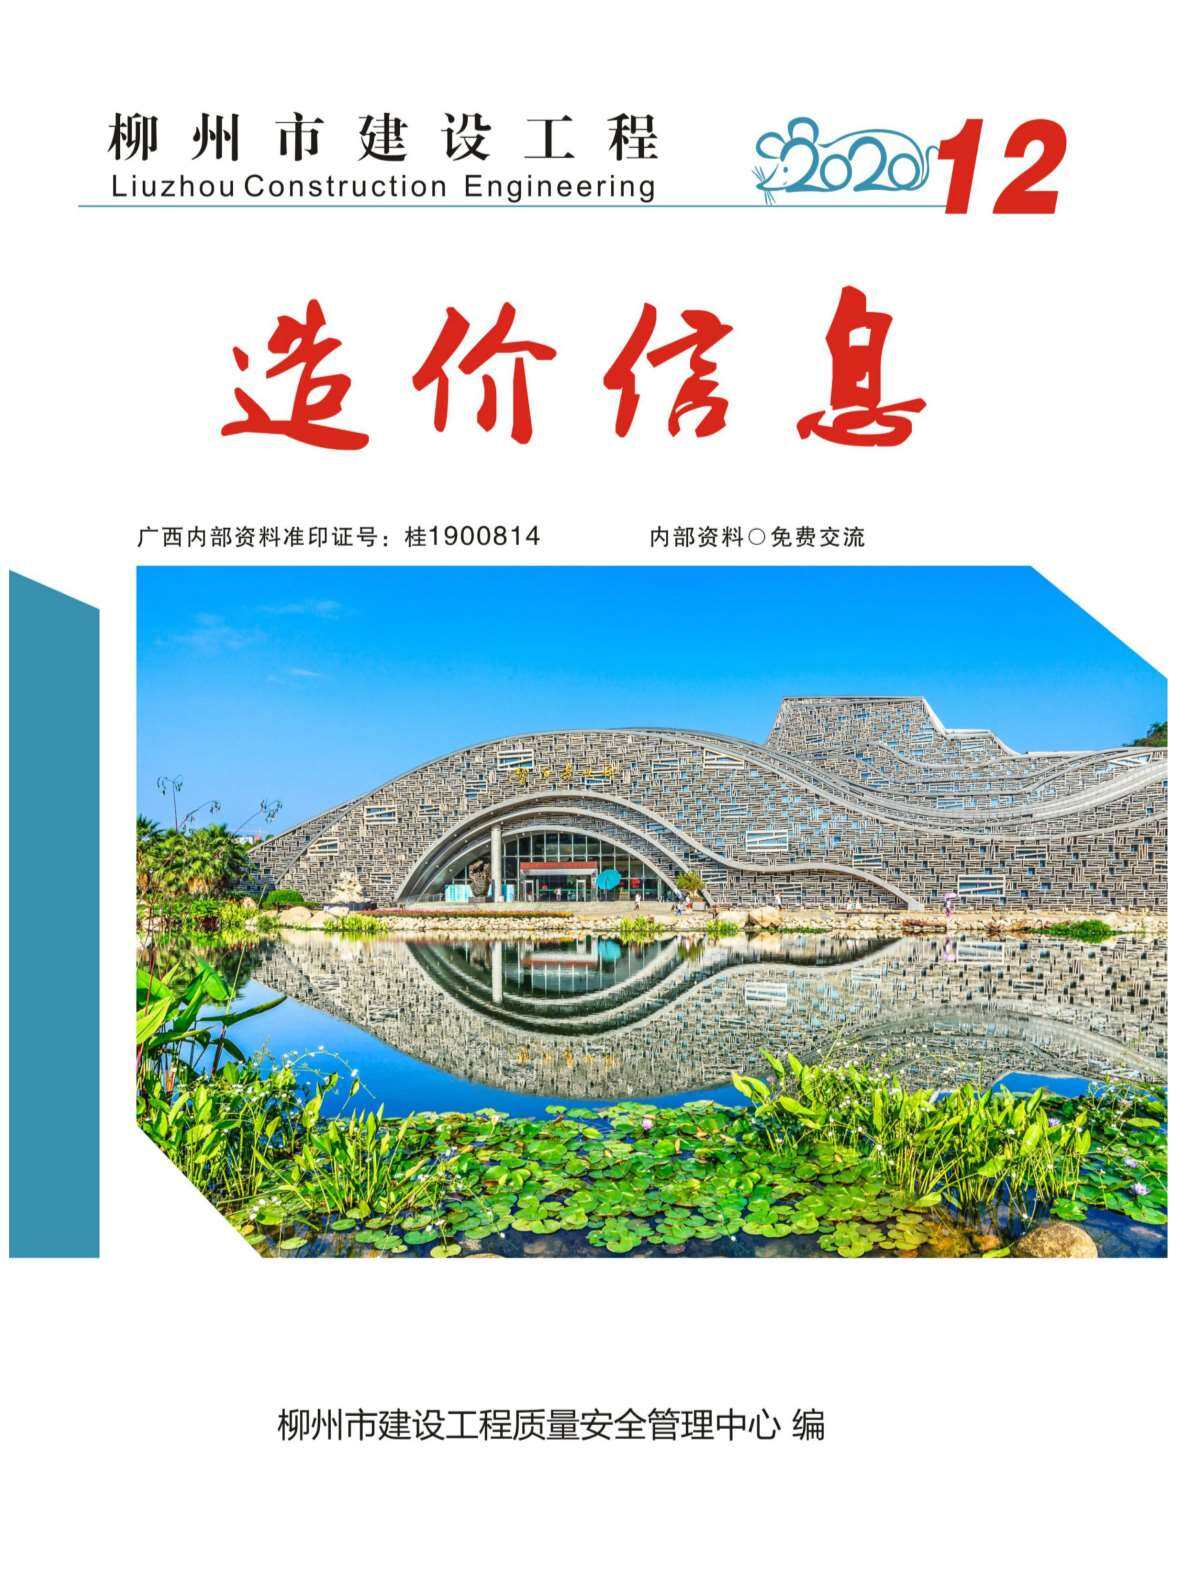 柳州市2020年12月工程造价信息期刊